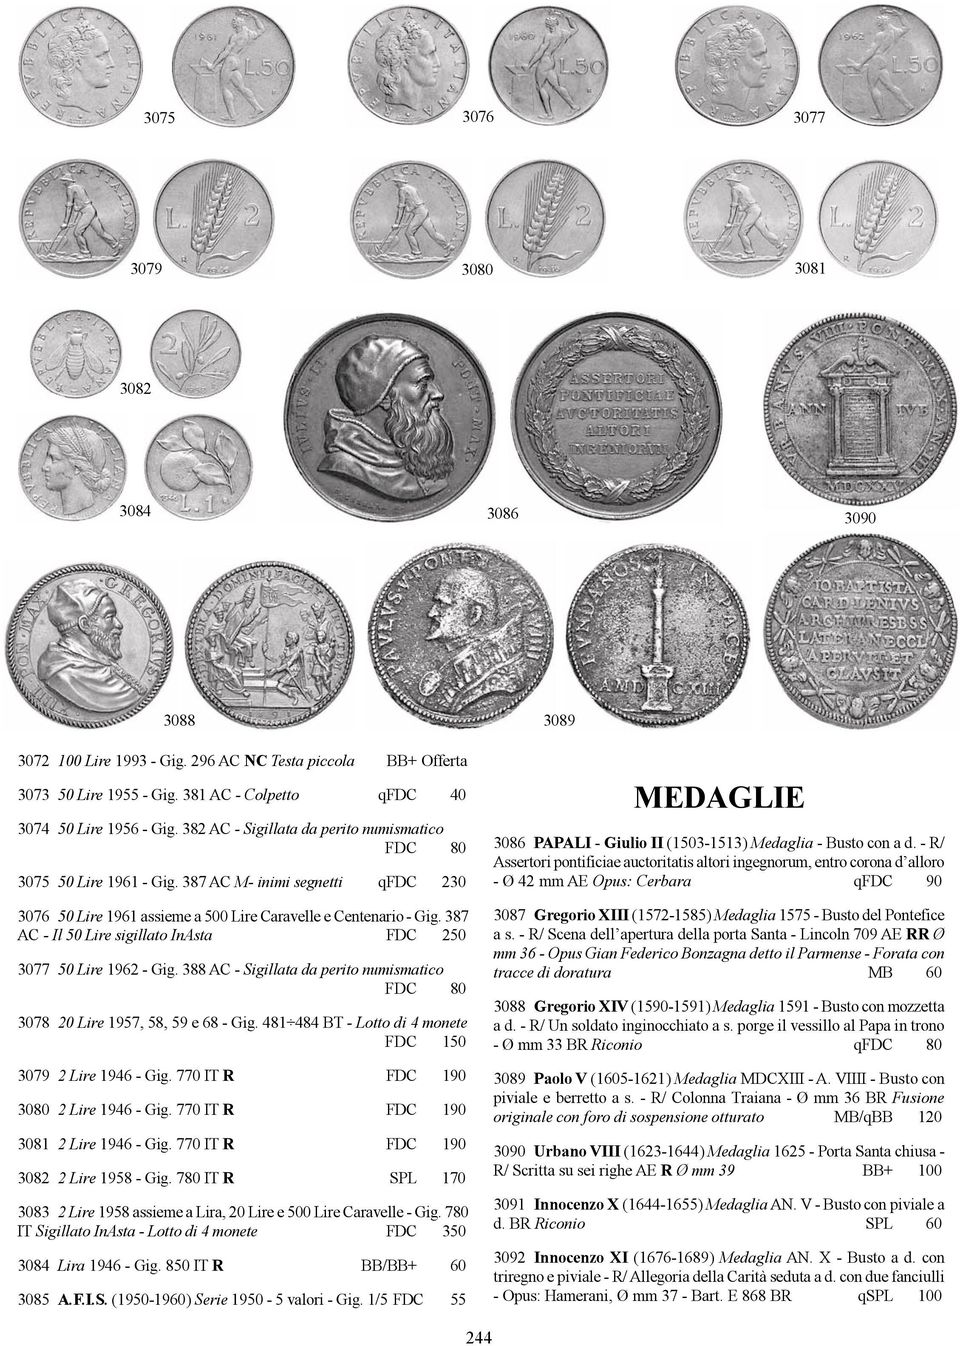 387 AC - Il 50 Lire sigillato InAsta FDC 250 3077 50 Lire 1962 - Gig. 388 AC - Sigillata da perito numismatico FDC 80 3078 20 Lire 1957, 58, 59 e 68 - Gig.